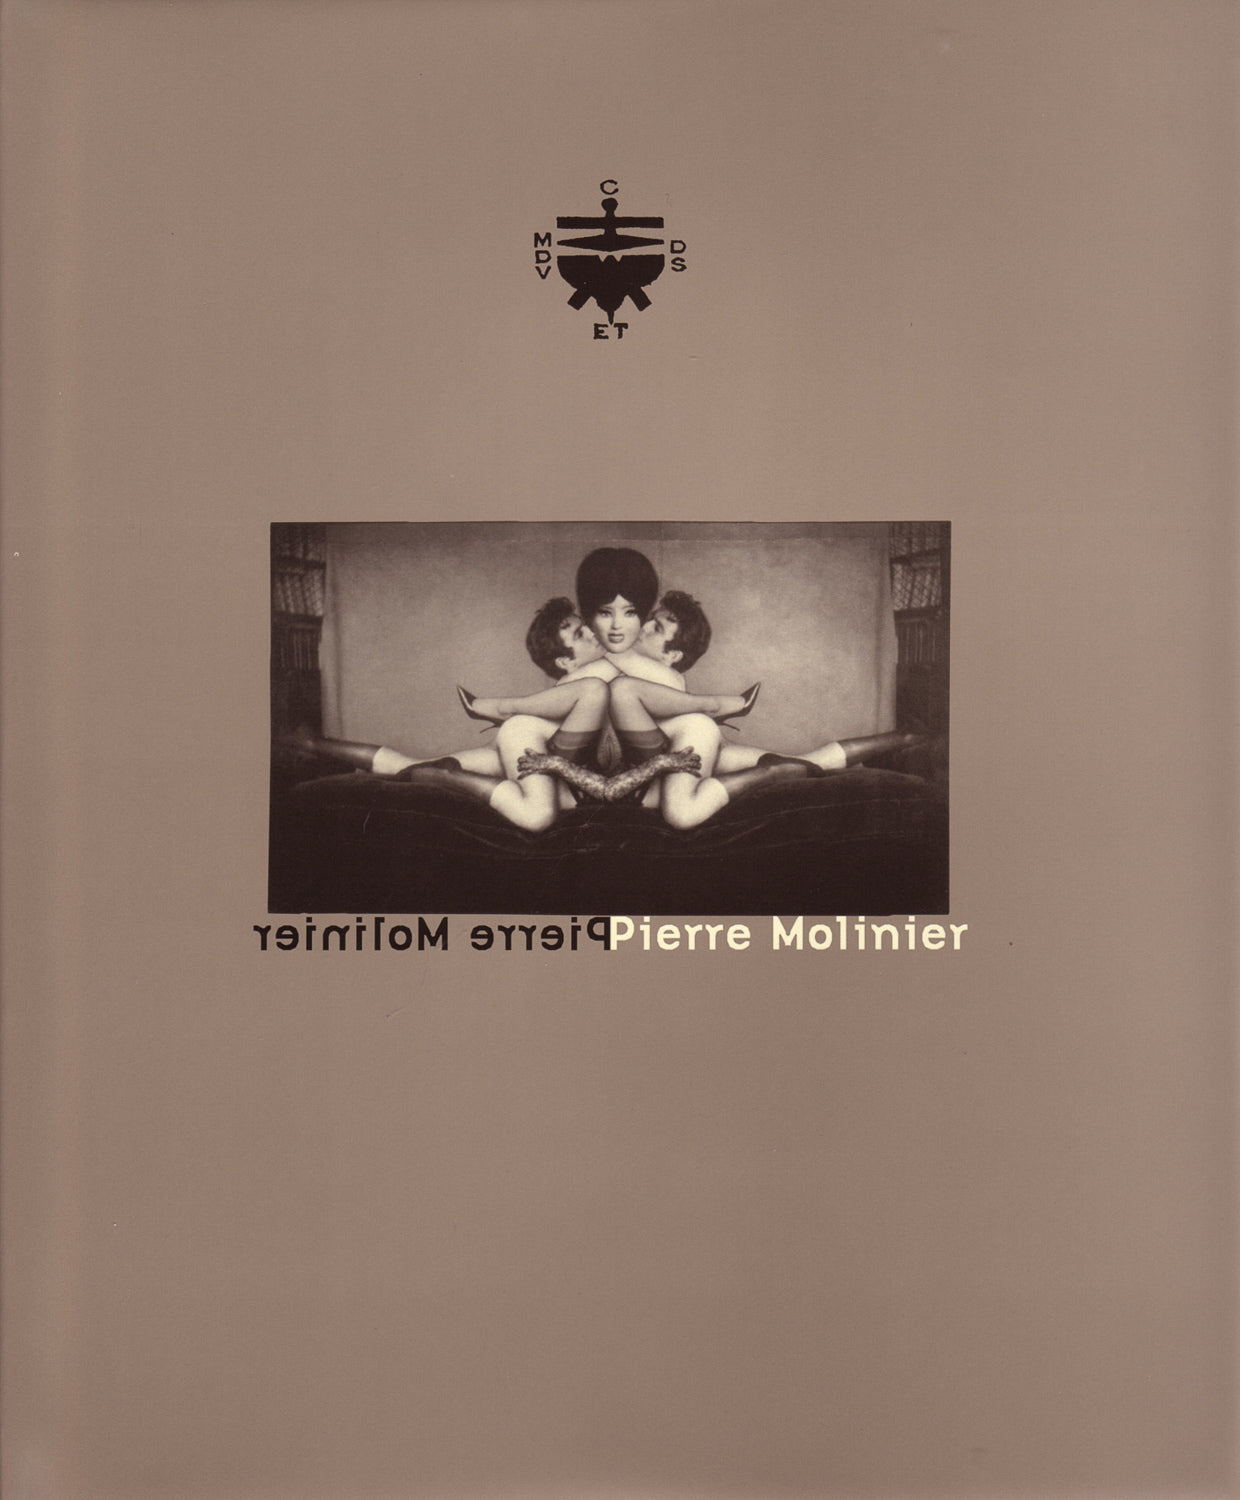 Pierre Molinier - Hardcover Exhibition Catalog [1996]